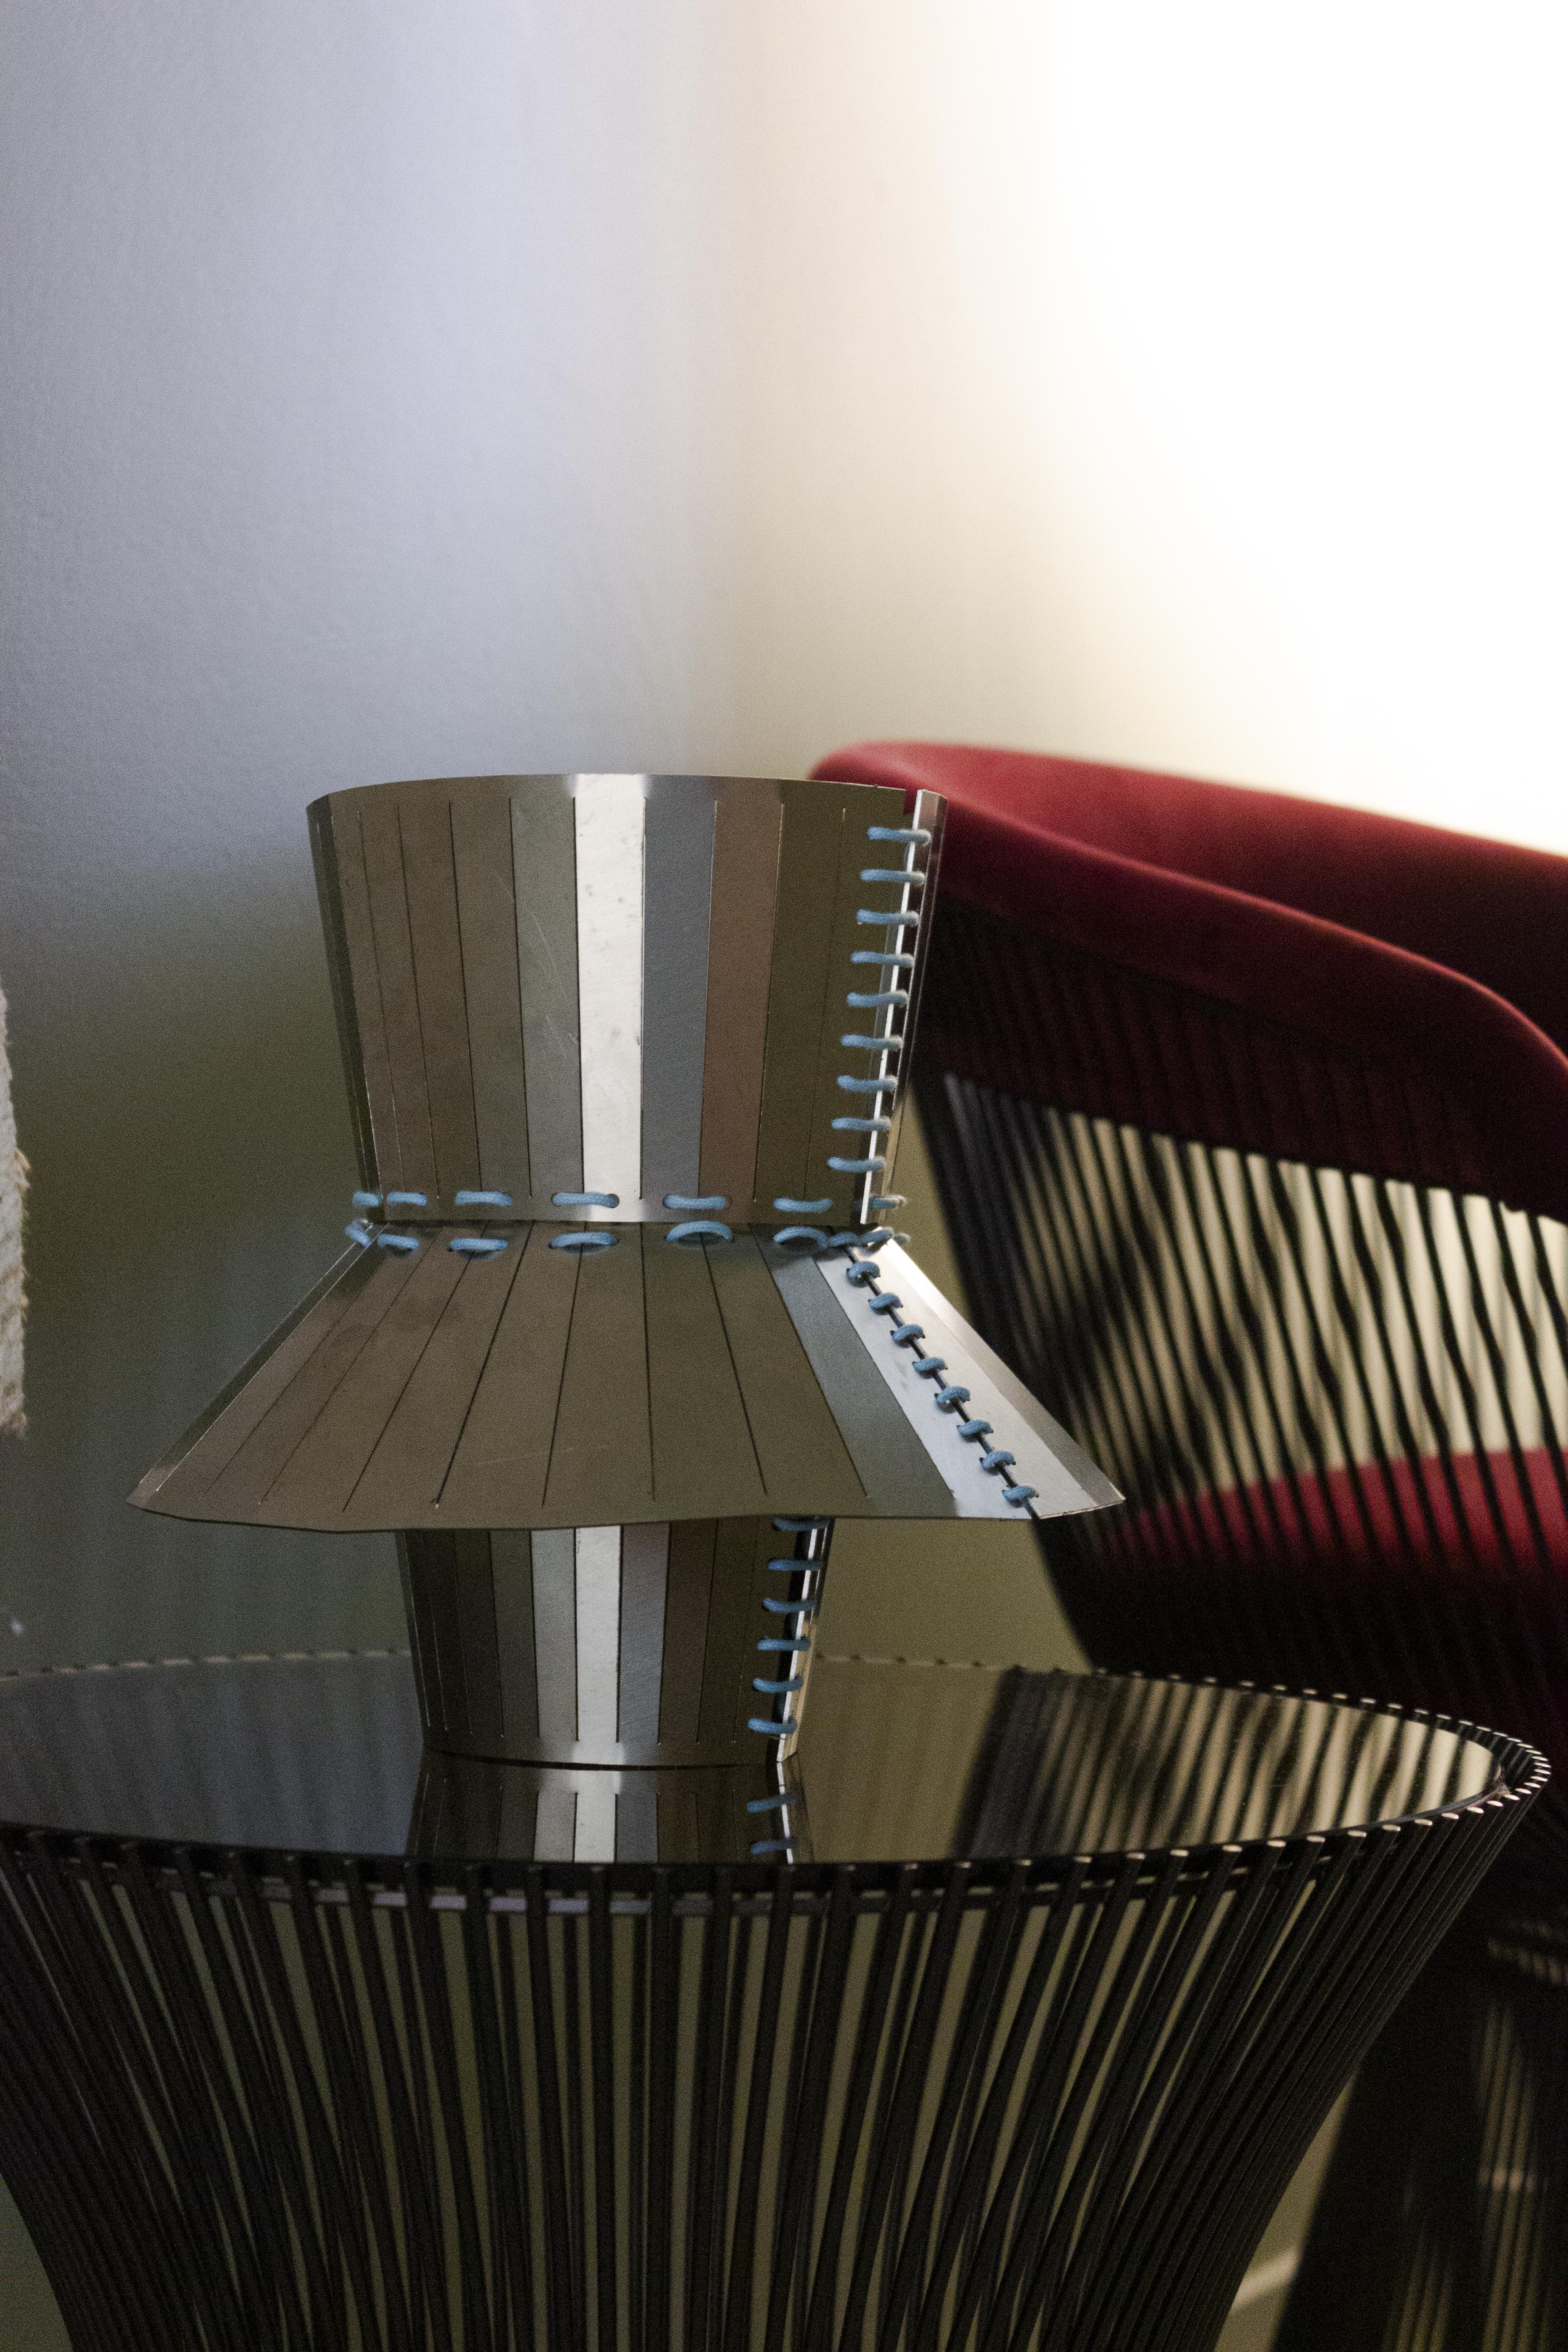 Vase en acier inoxydable de la collection Minas conçue par StudioNotte. Ce plateau aux formes épurées et multiformes est assemblé avec des coutures en corde. 
L'ensemble de la collection Minas se compose de deux centres de table et d'un plateau.